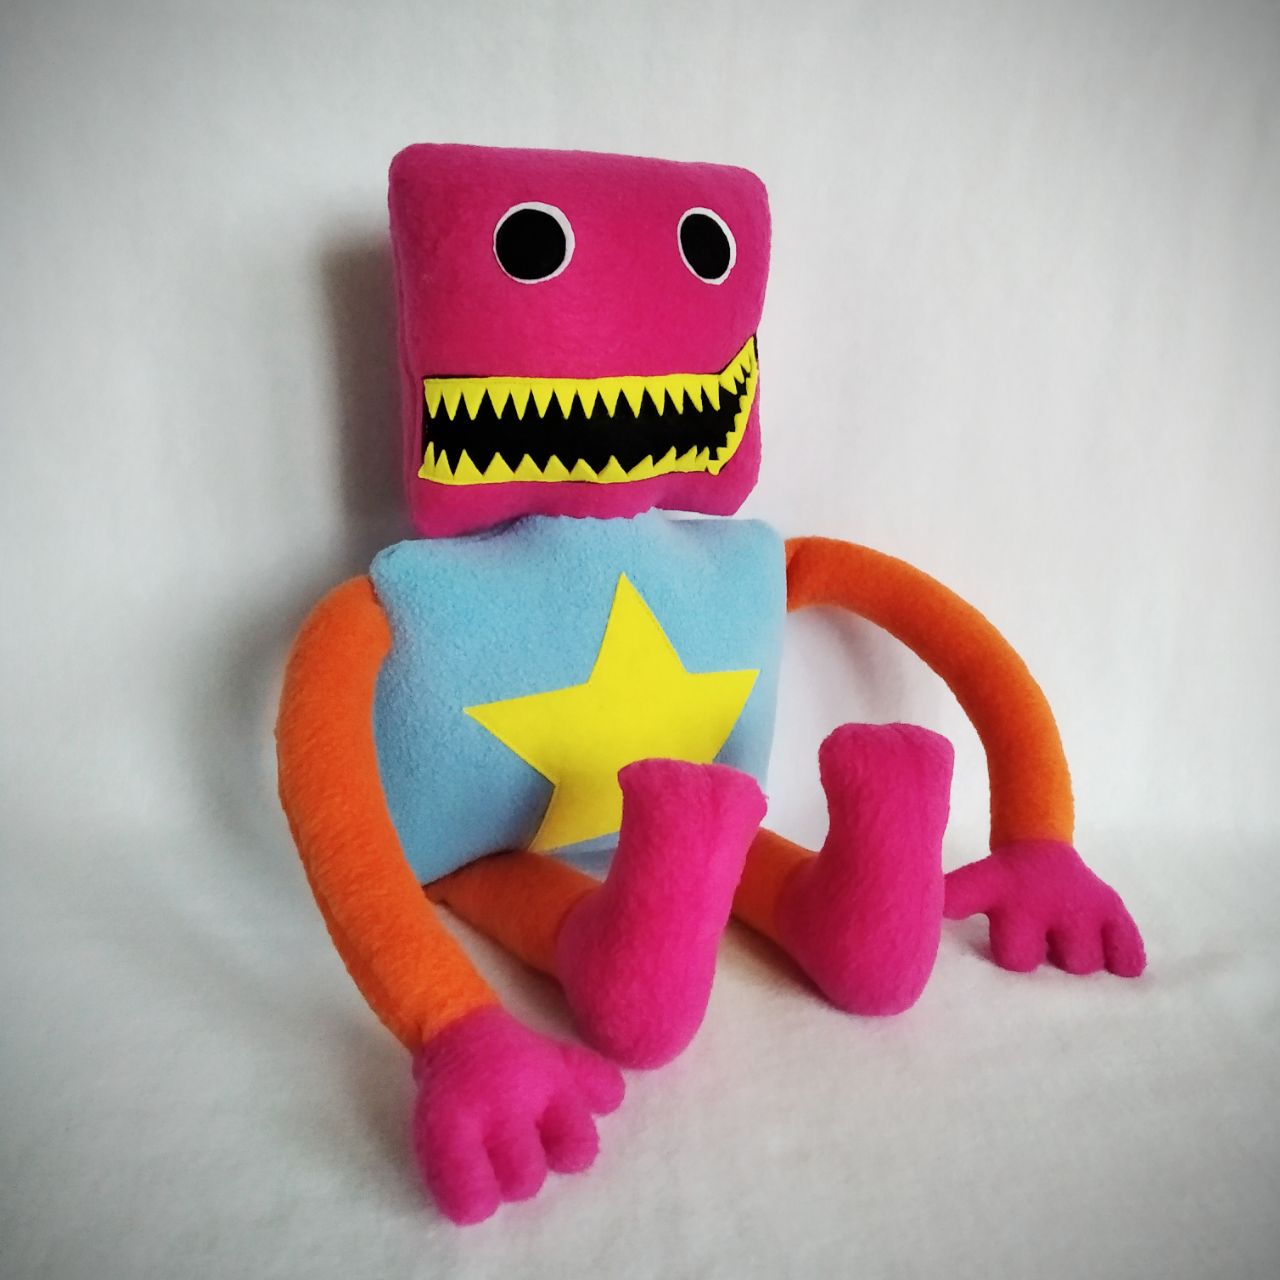 Boxy Boo Plush Toy Project Playtime Boxy Plush Doll Stuffed Figure Pillow